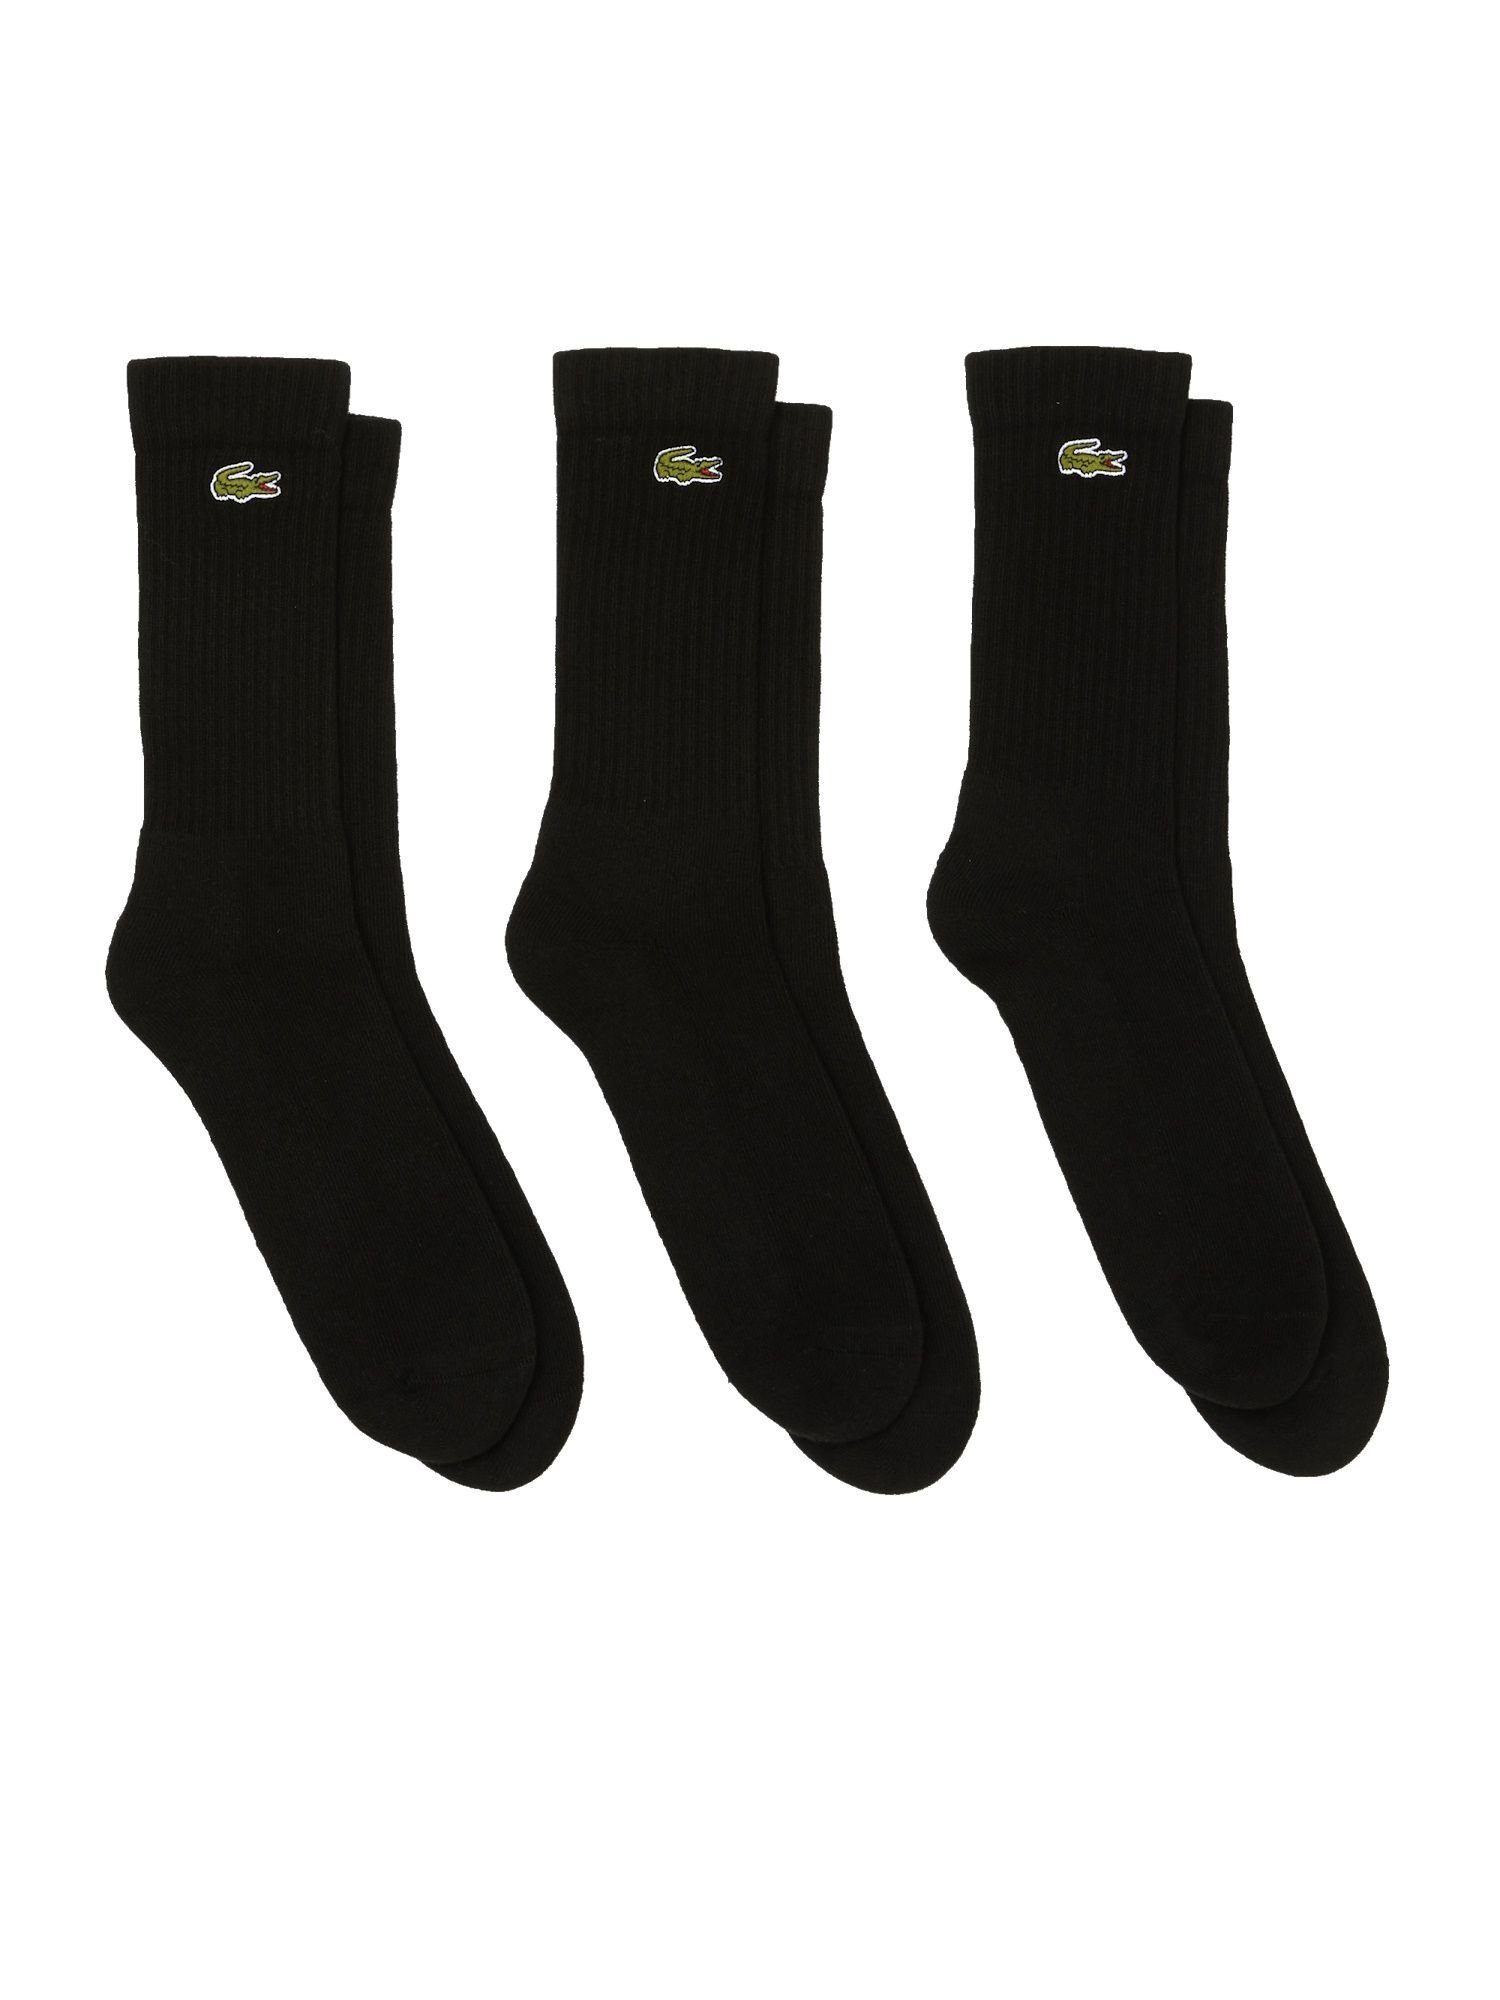 Socken Socken schwarz hohe (3-Paar) Offer Dreierpack Lacoste Permanent Socken